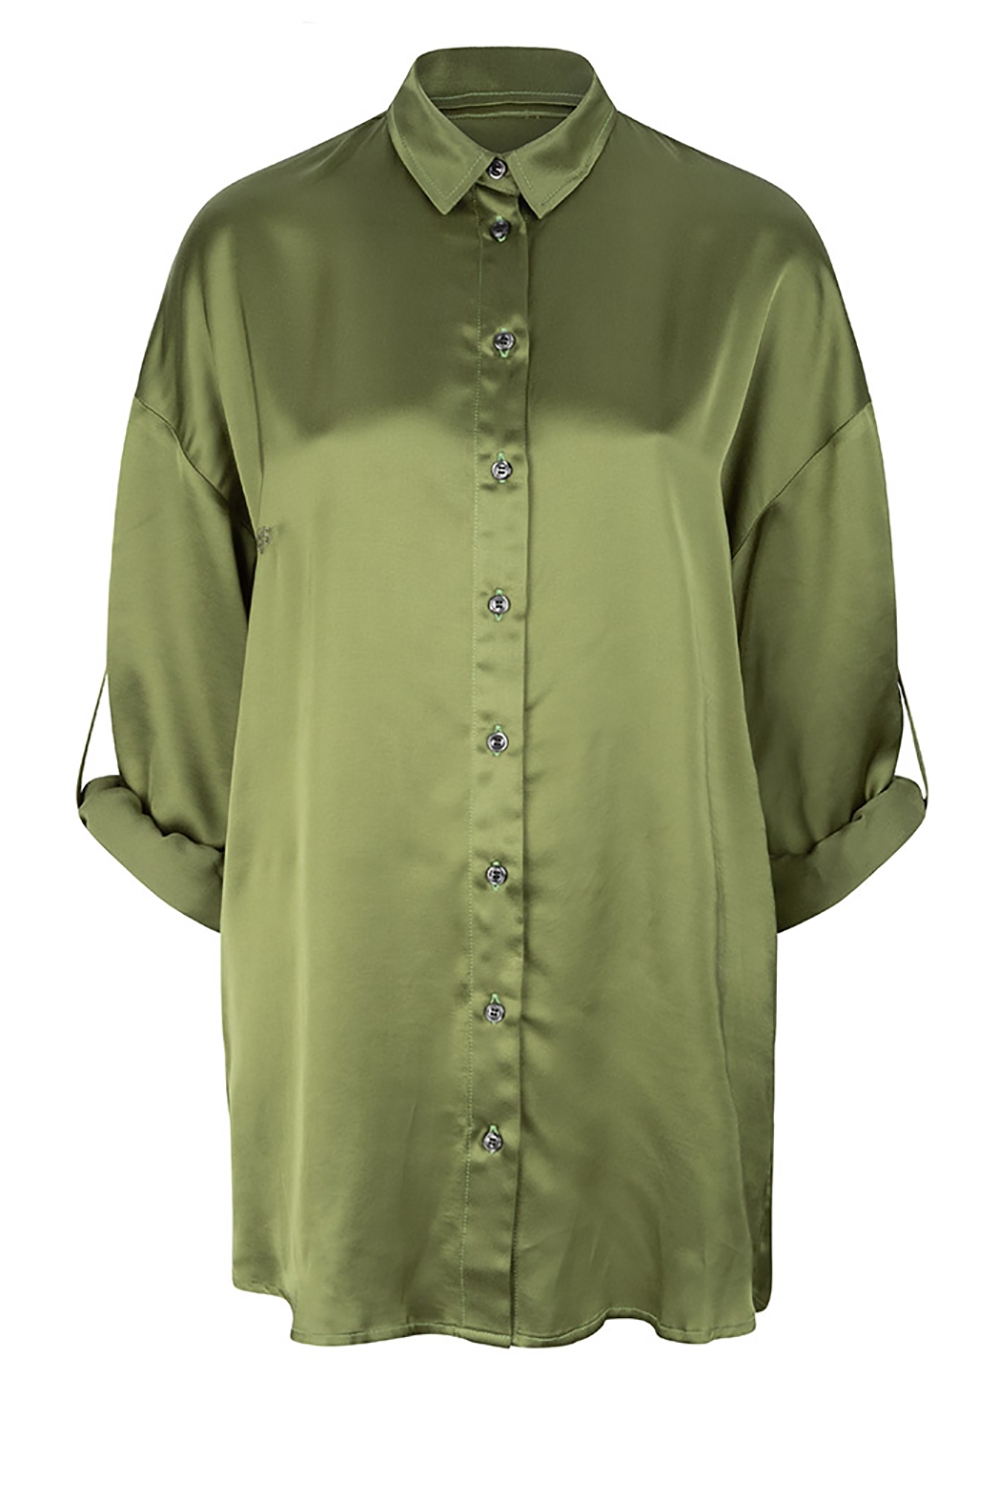 CHPTR S Oversized satijnen blouse Lavish groen